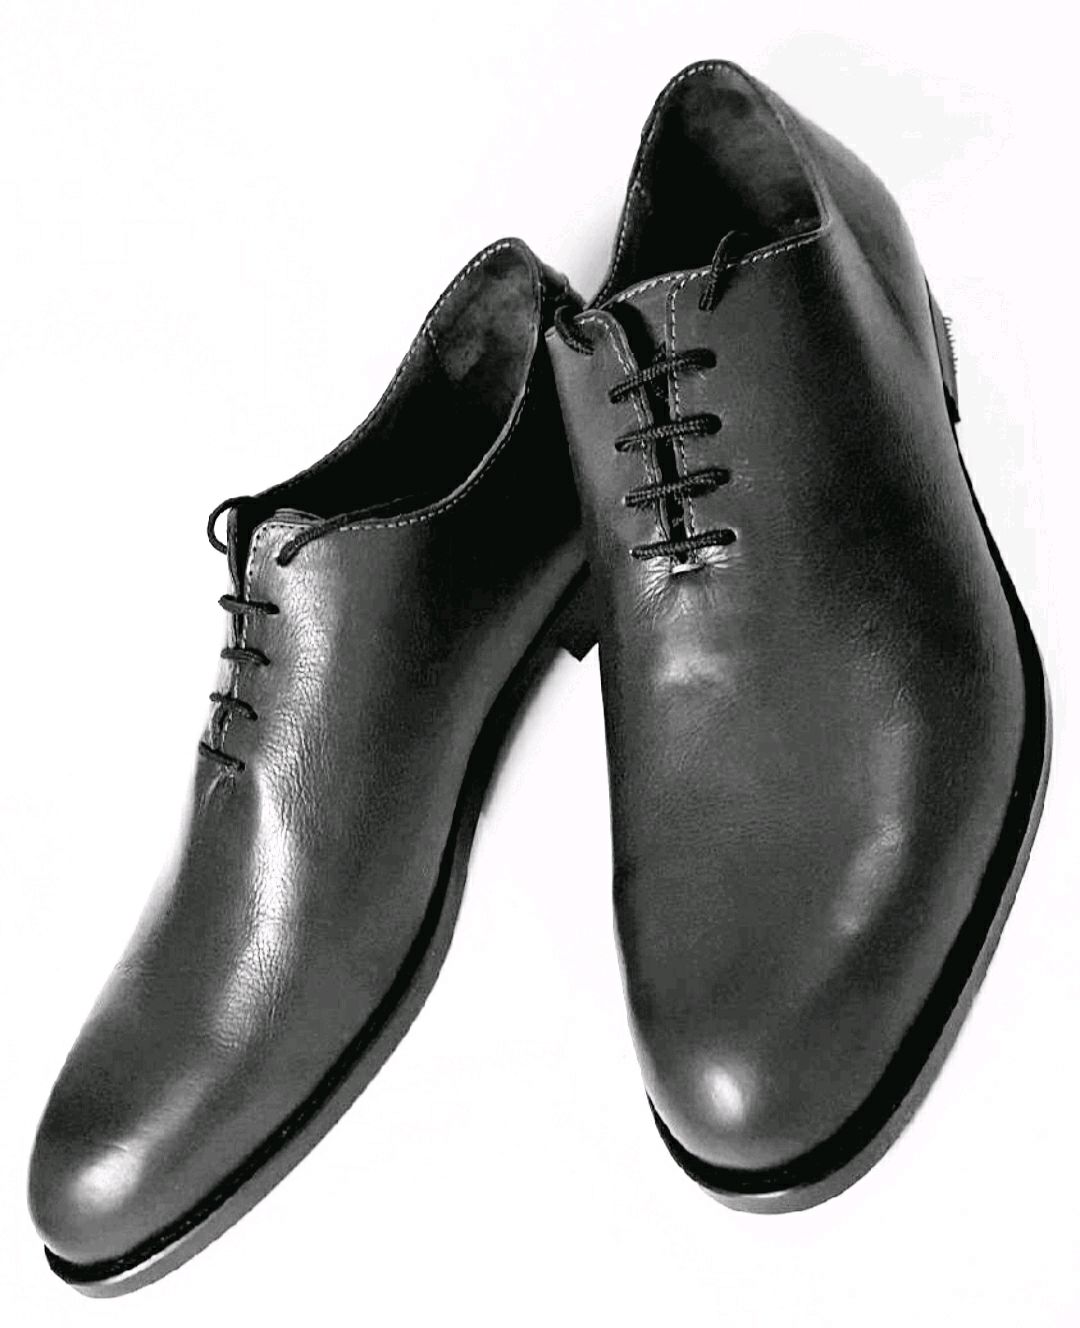 Мужская обувь в краснодаре. Vladis Elegant 1138 туфли мужские. Мужские кожаные Tufli 2020. Mainichi Leather туфли мужские. Туфли мужские кожаные классические.